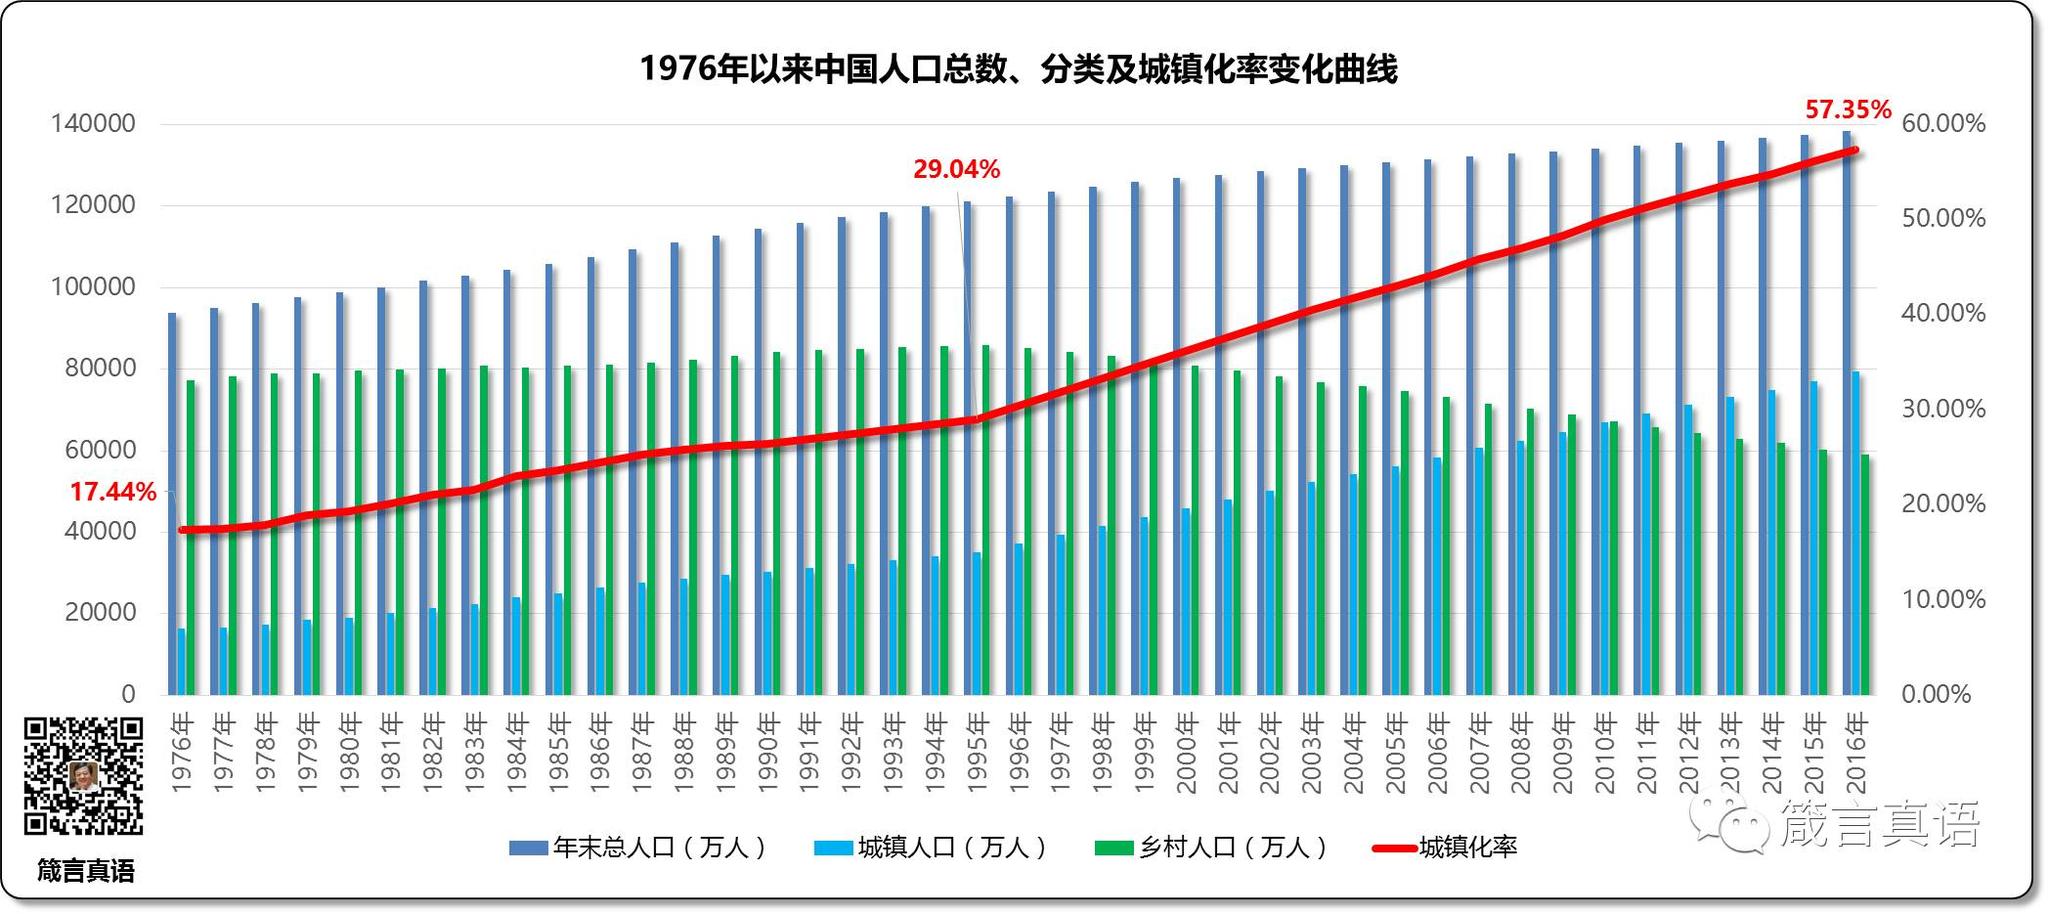 1976年以来中国人口总数、分类及城镇化率变化曲线